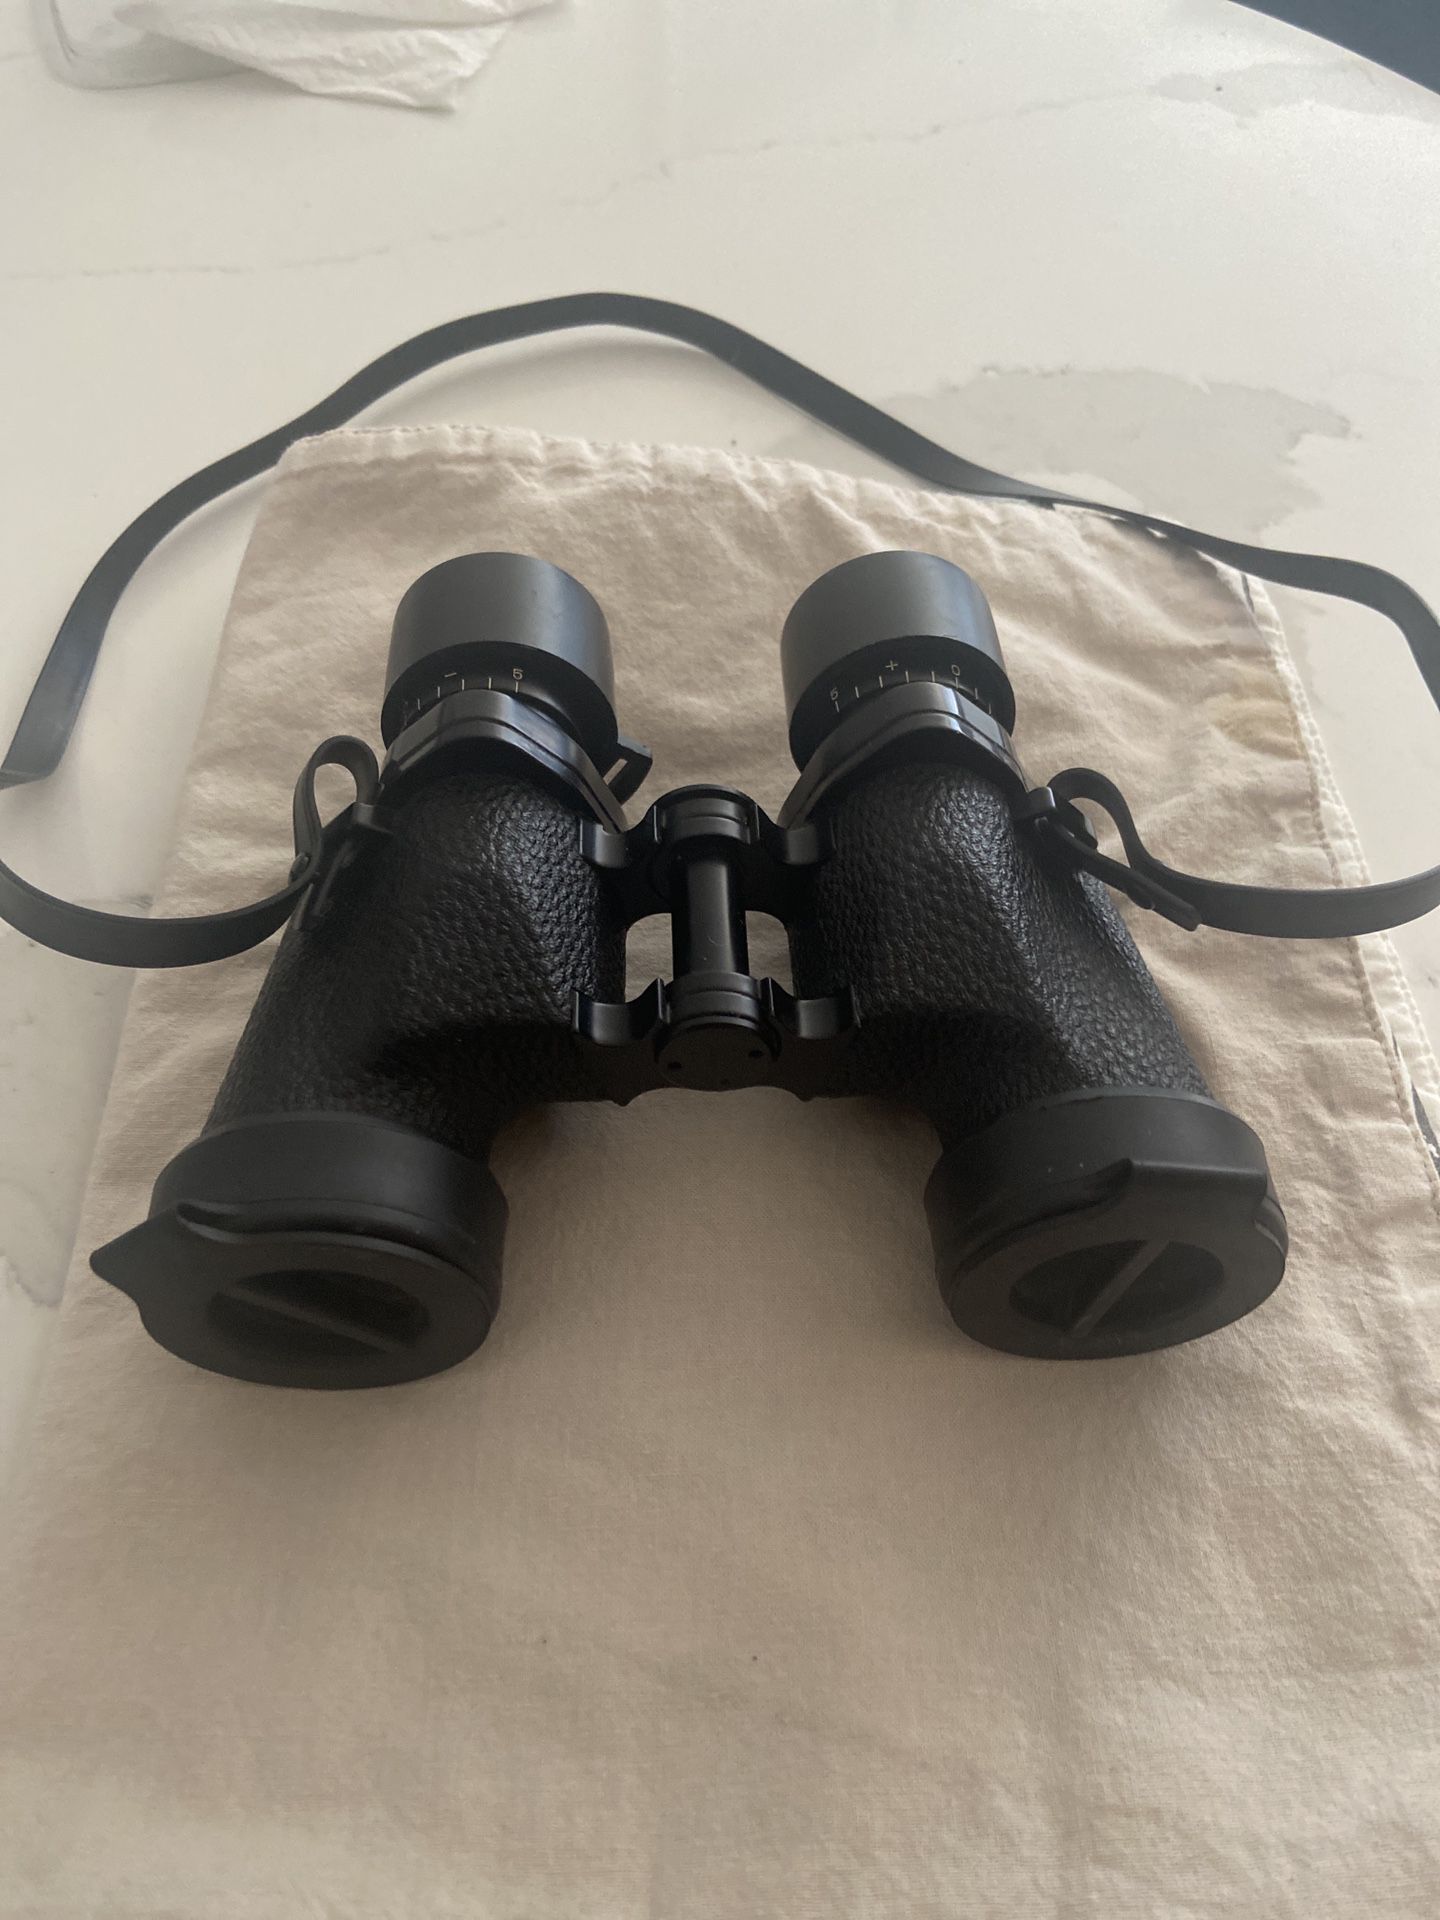 Fujinon Binoculars 8x30